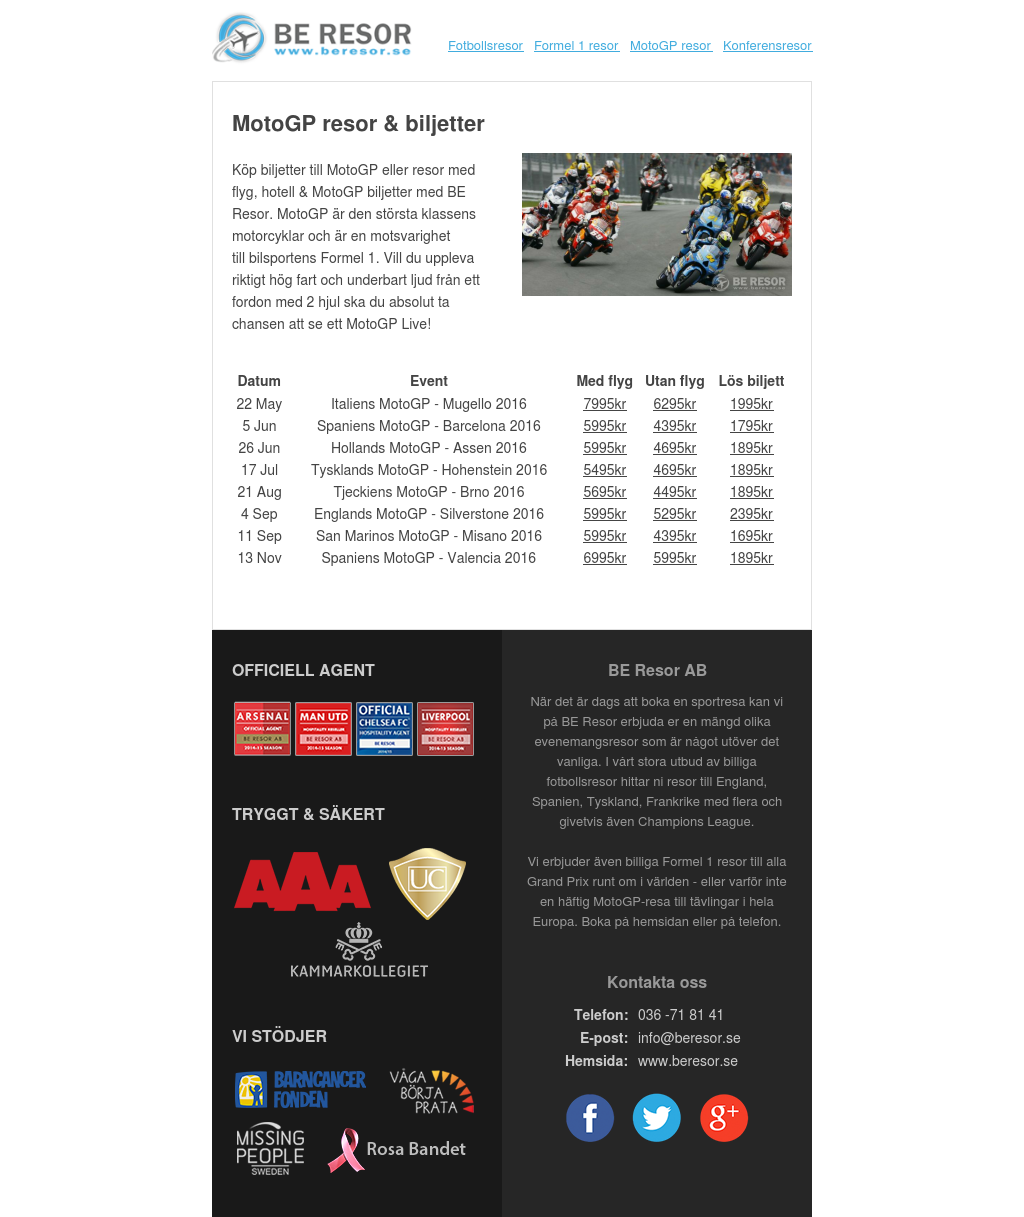 MotoGP resor & biljetter